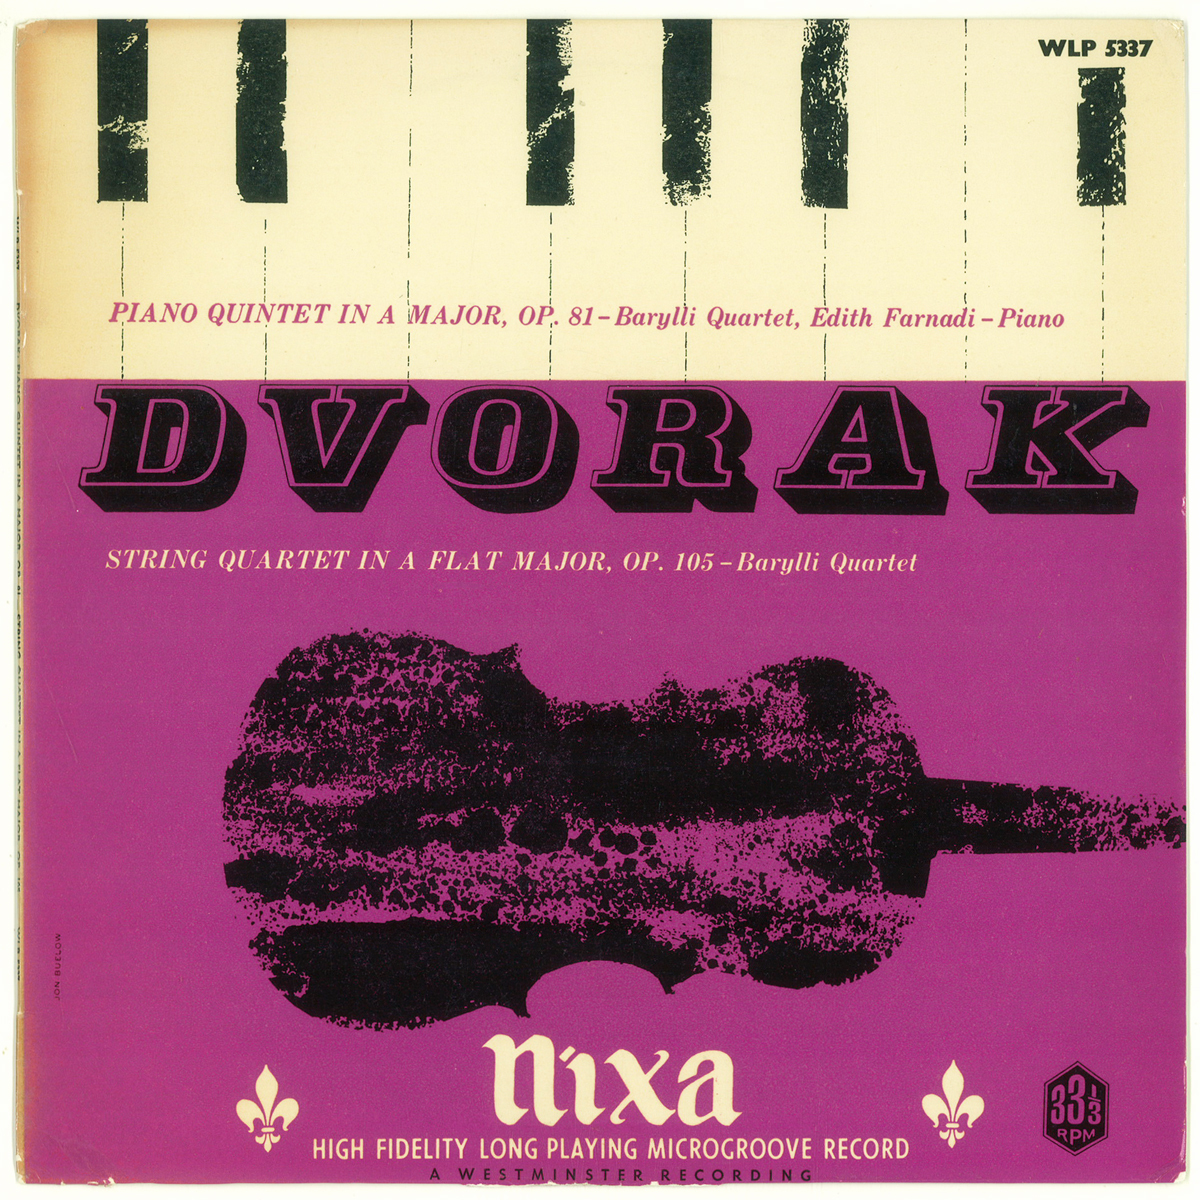 英Nixa WLP5337 ドヴォルザーク「ピアノ五重奏曲第2番」 ファルナディ バリリ四重奏団の画像1